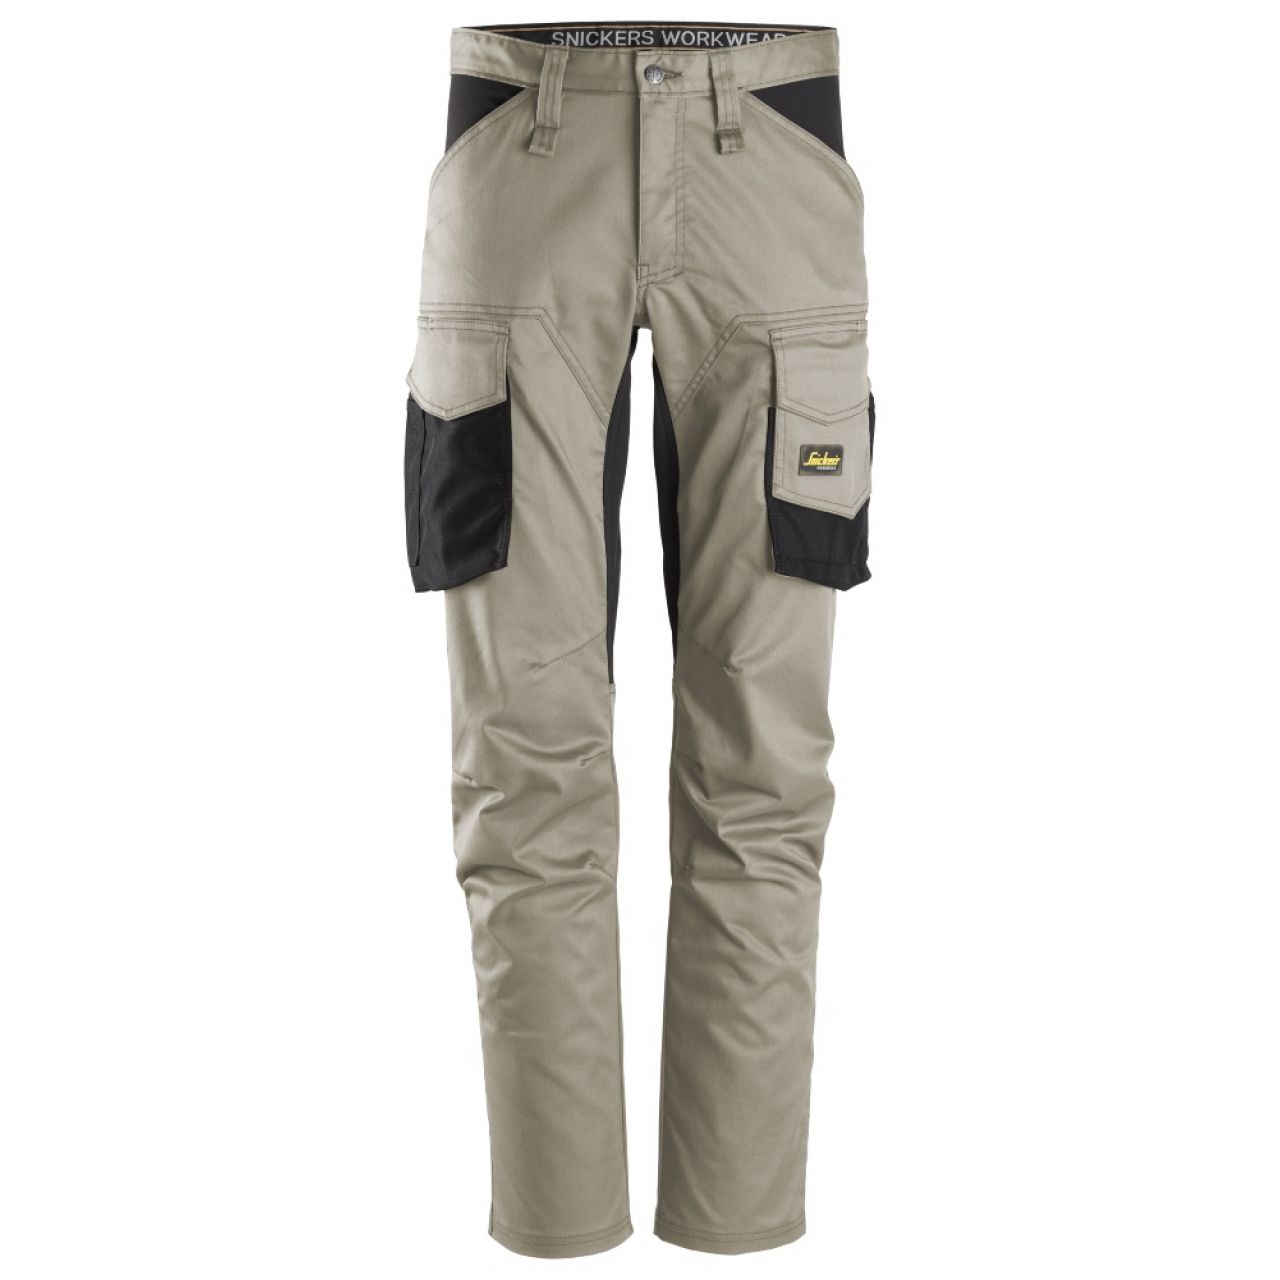 6803 Pantalones largos de trabajo elásticos sin bolsillos para las rodilleras AllroundWork beige-negro talla 258